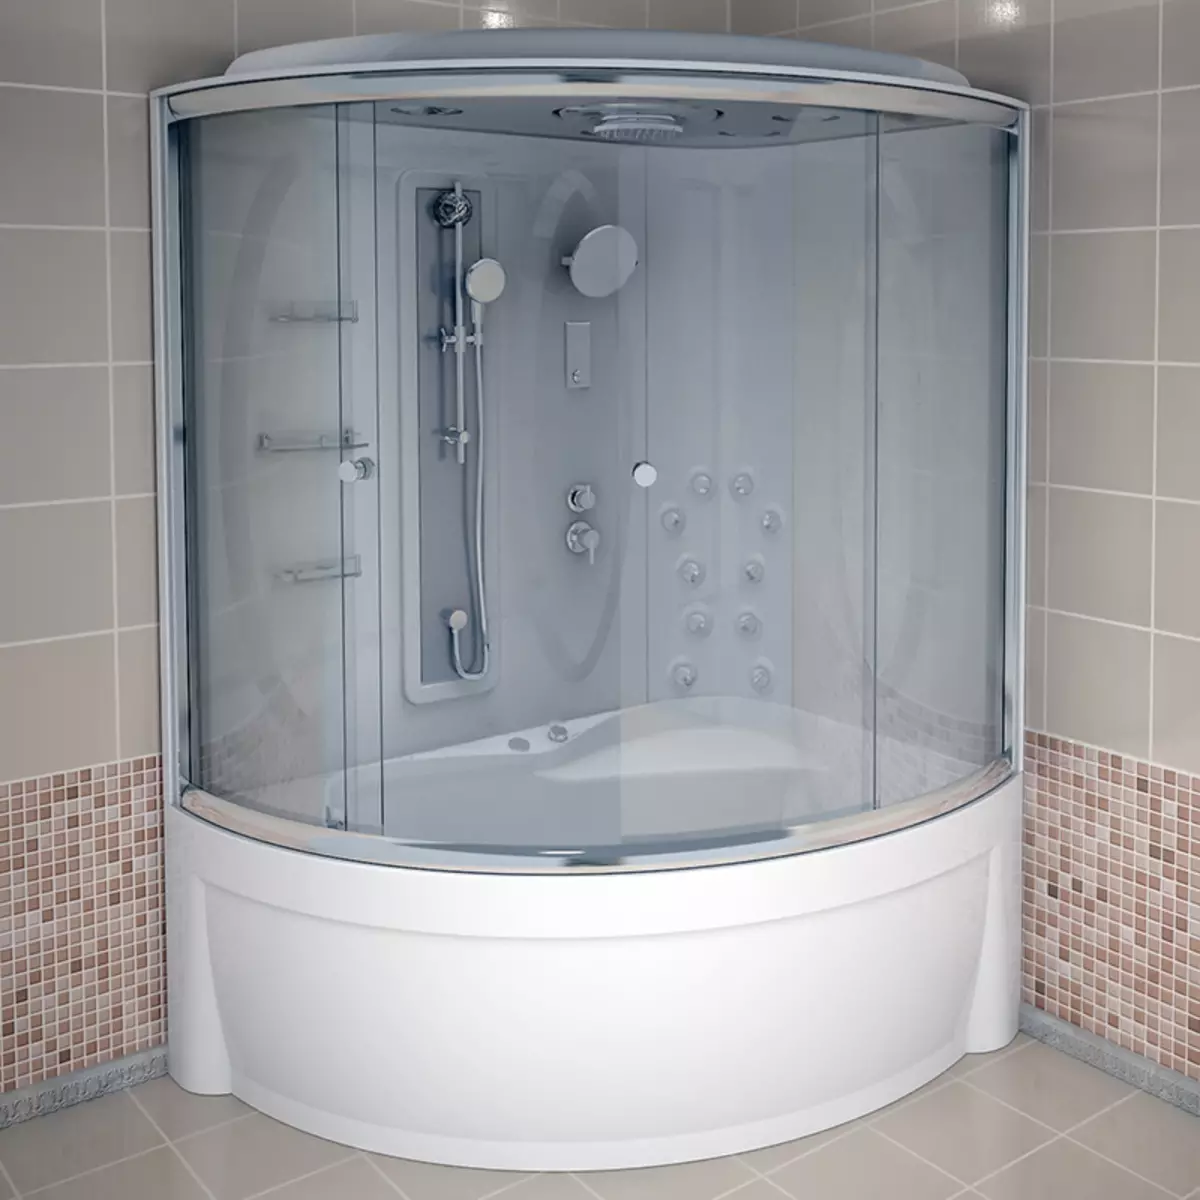 स्नानगृह डिझाइन 5 केव्ही. एम (111 फोटो): वॉशिंग मशीनसह आधुनिक इंटीररमध्ये सुंदर बाथरुमचे 5 स्क्वेअर मीटरचे प्रकल्प 10205_82